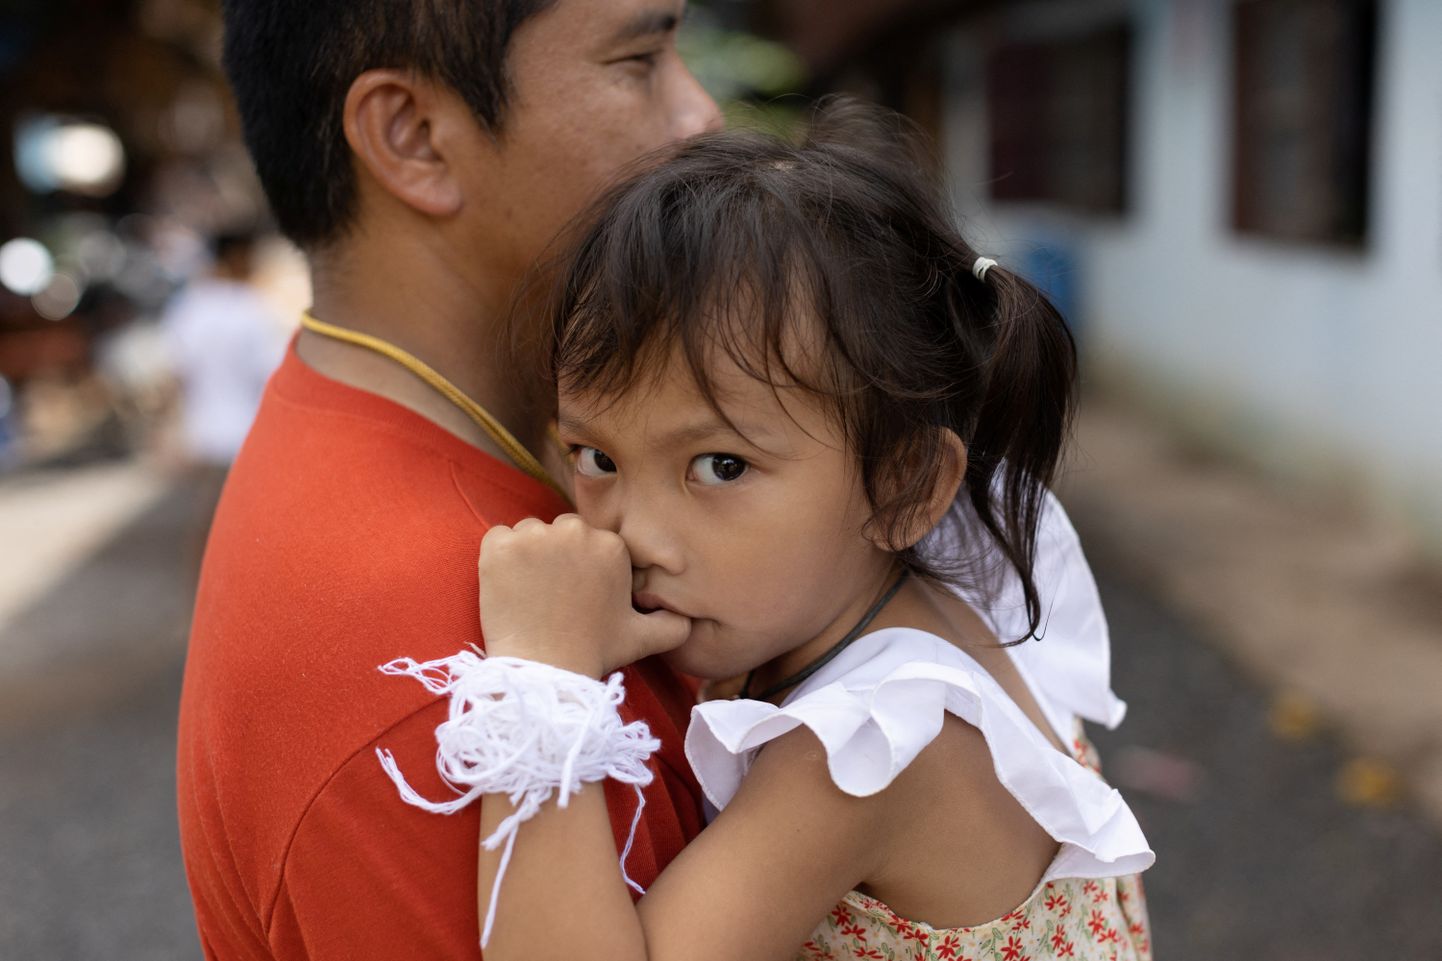 Kolmeaastane Paveenut Supolwong, hüüdnimega Ammy, on Tai lasteaias toimunud õudustes ainus laps, kes kriimustusteta pääses.